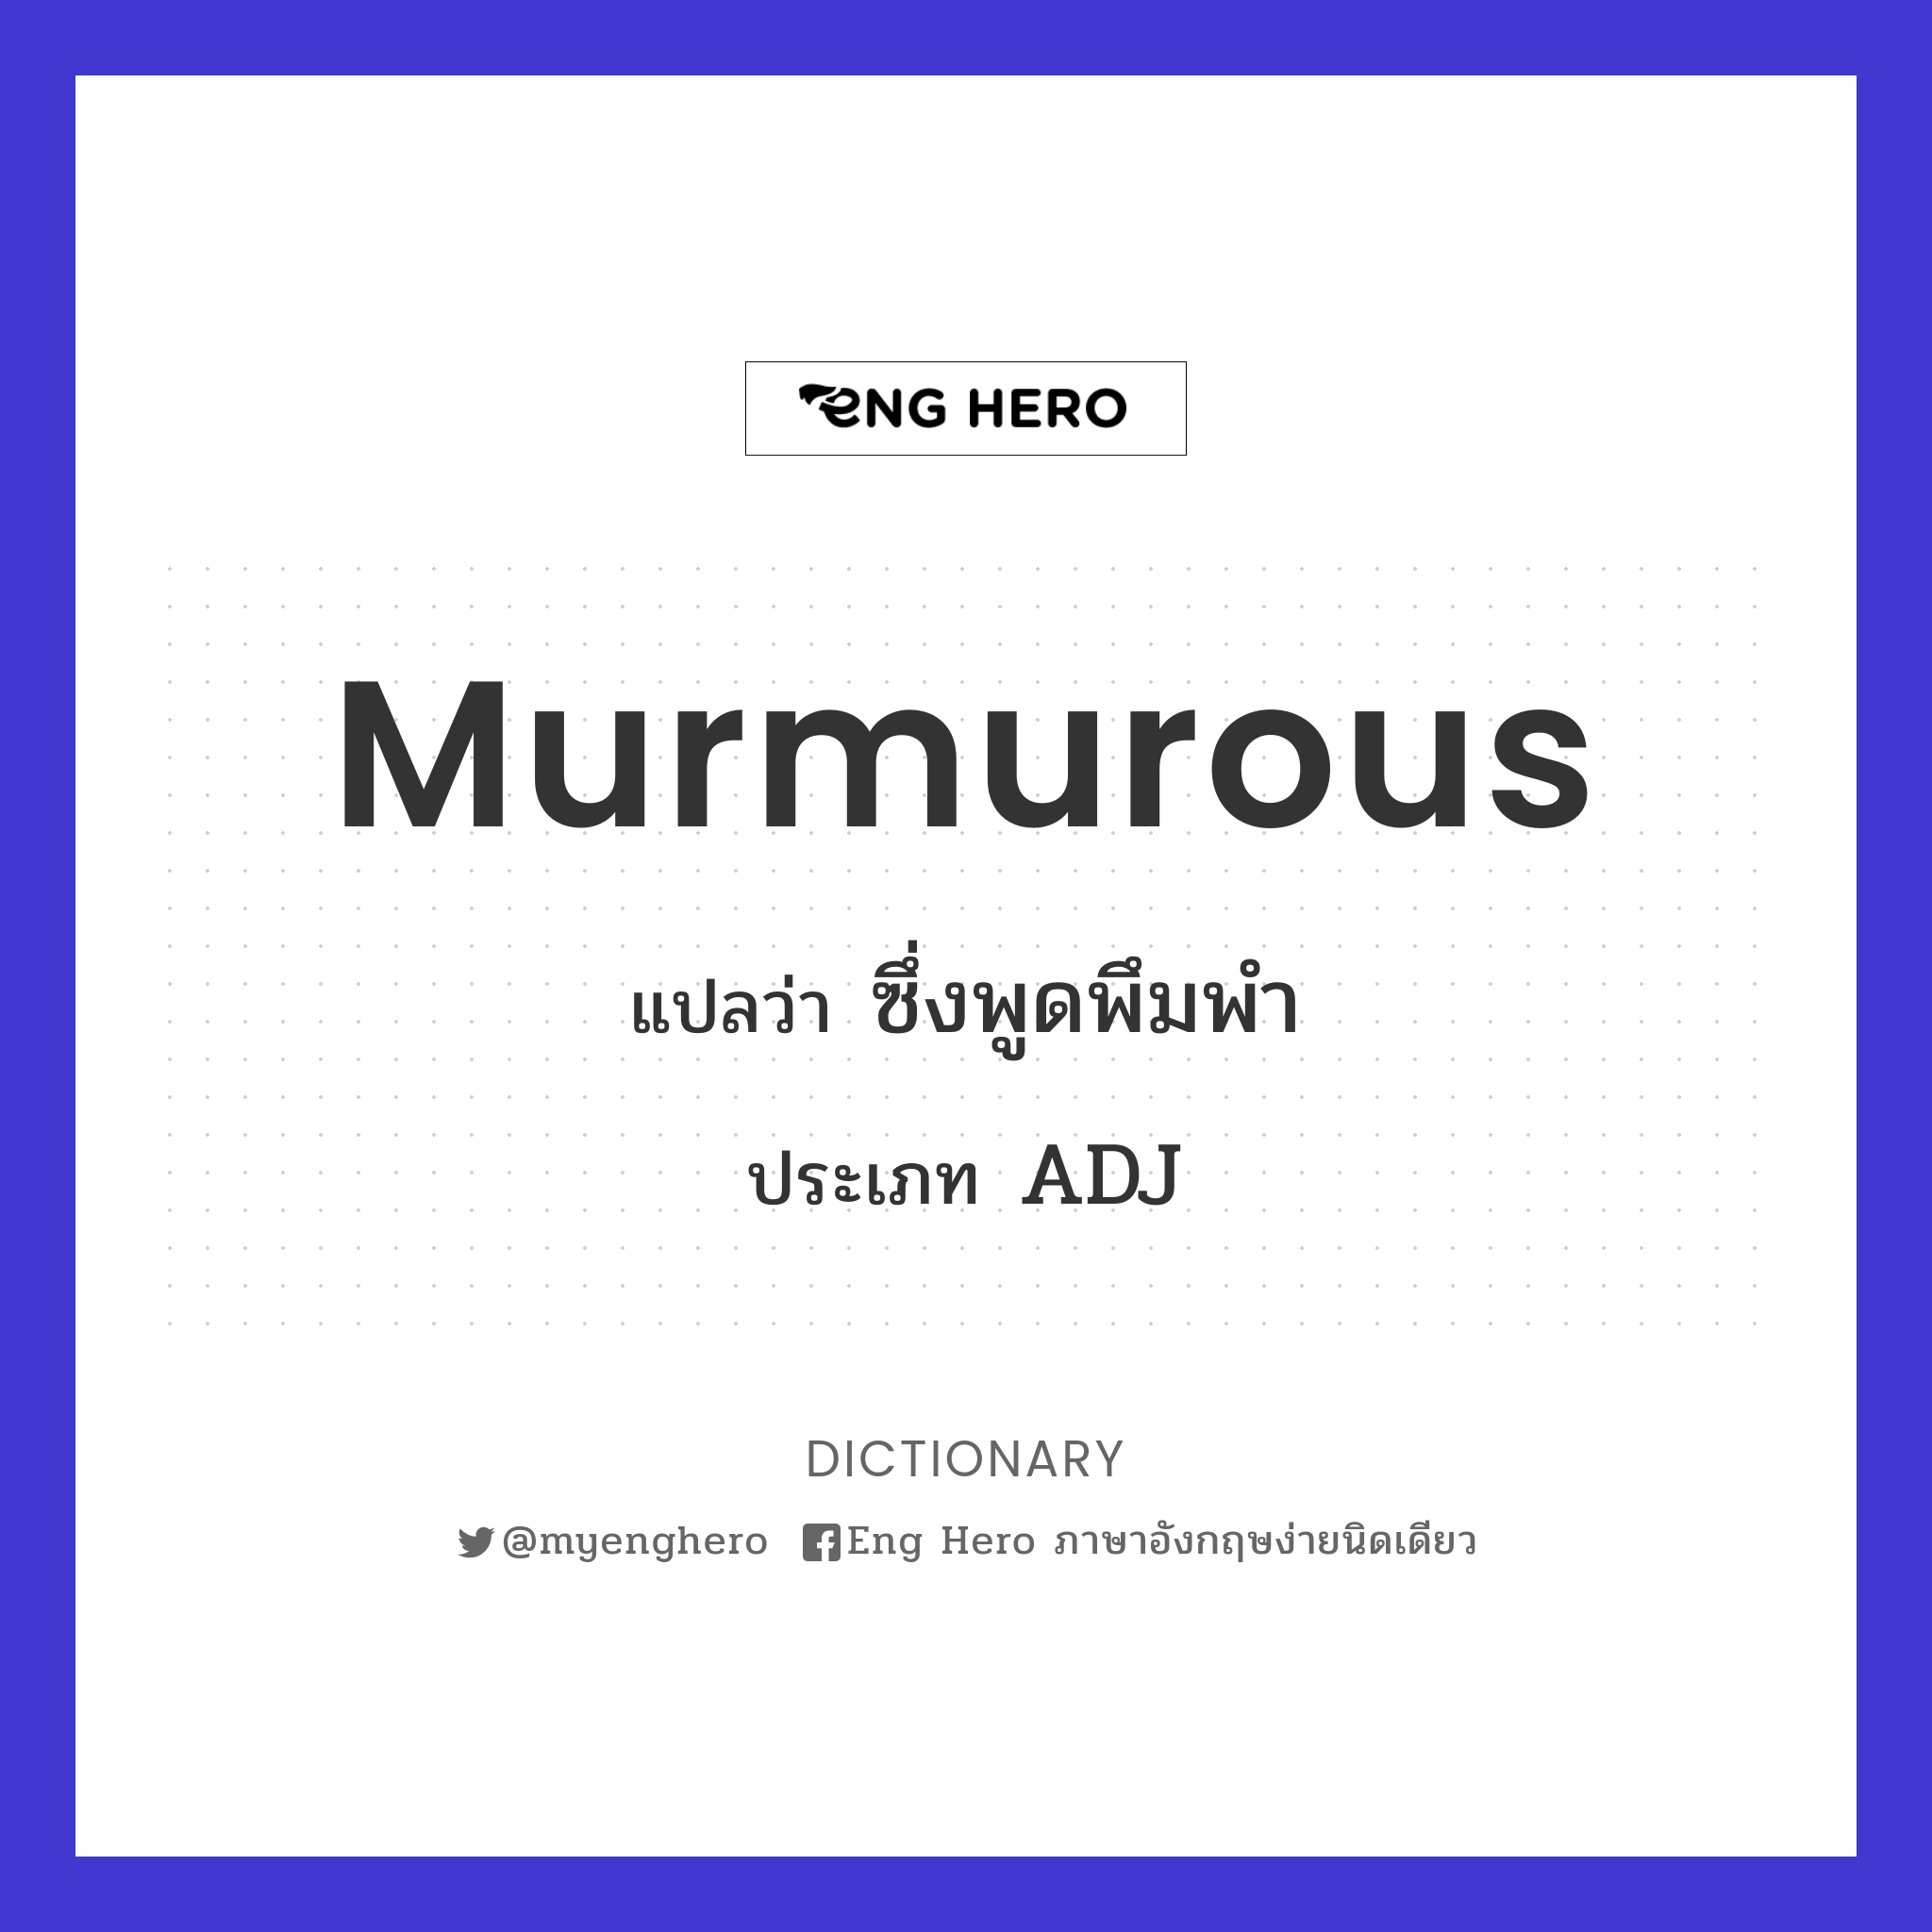 murmurous